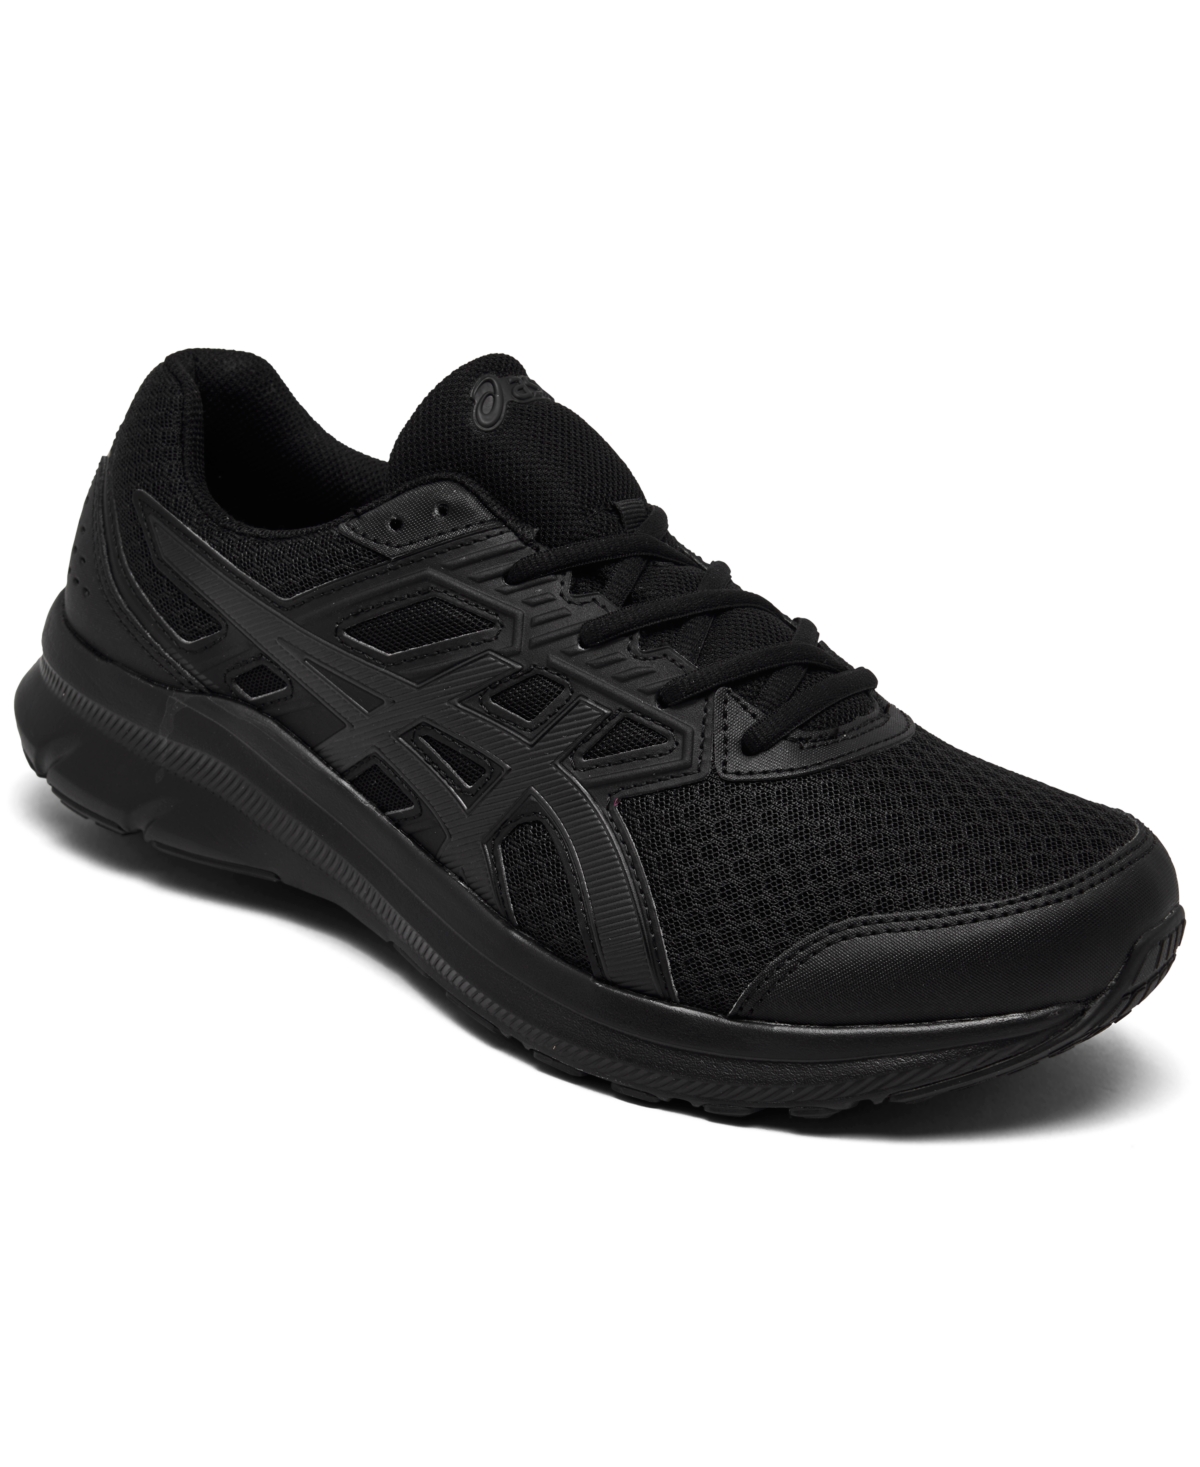 Asics Men's Jolt 3 Running Sneakers From Finish Line In Black/graphite ...